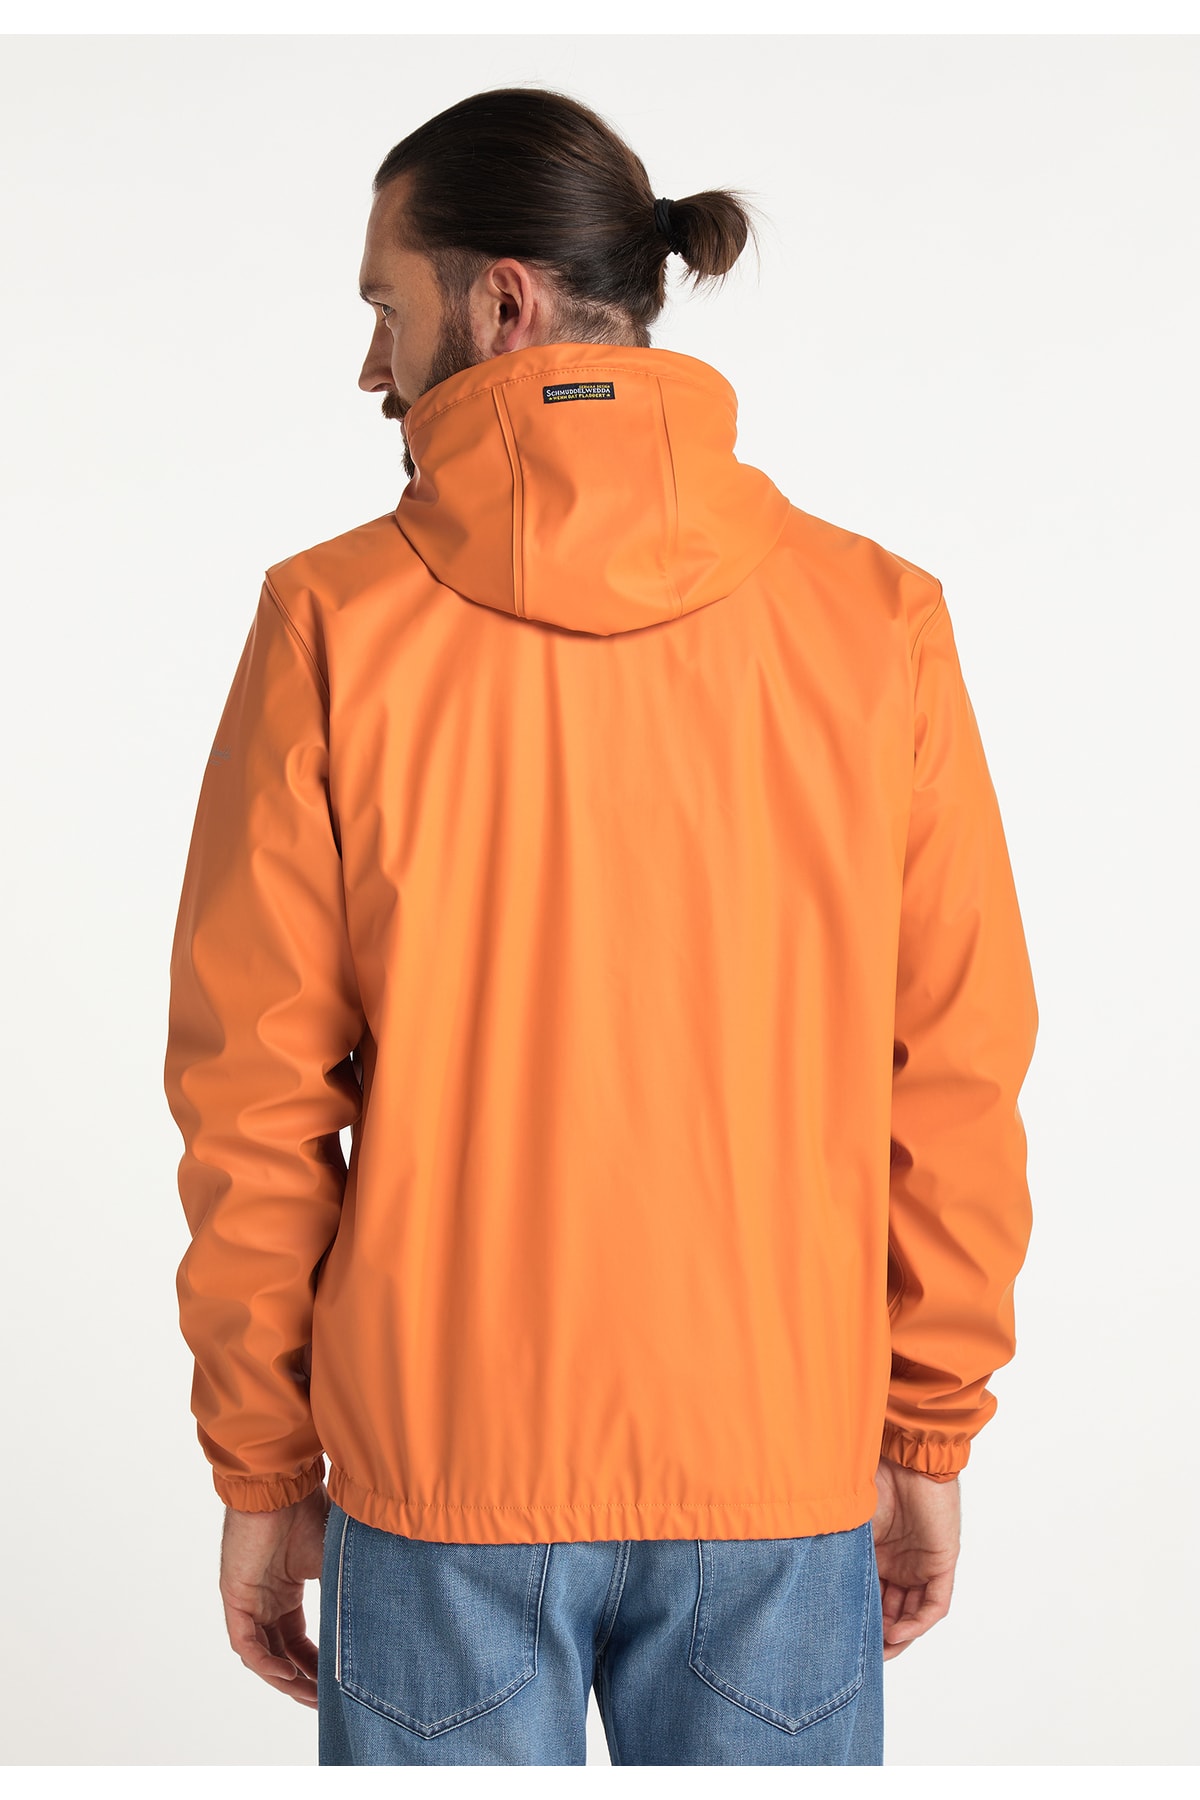 Schmuddelwedda Jacke Orange Regular Fit Fast ausverkauft